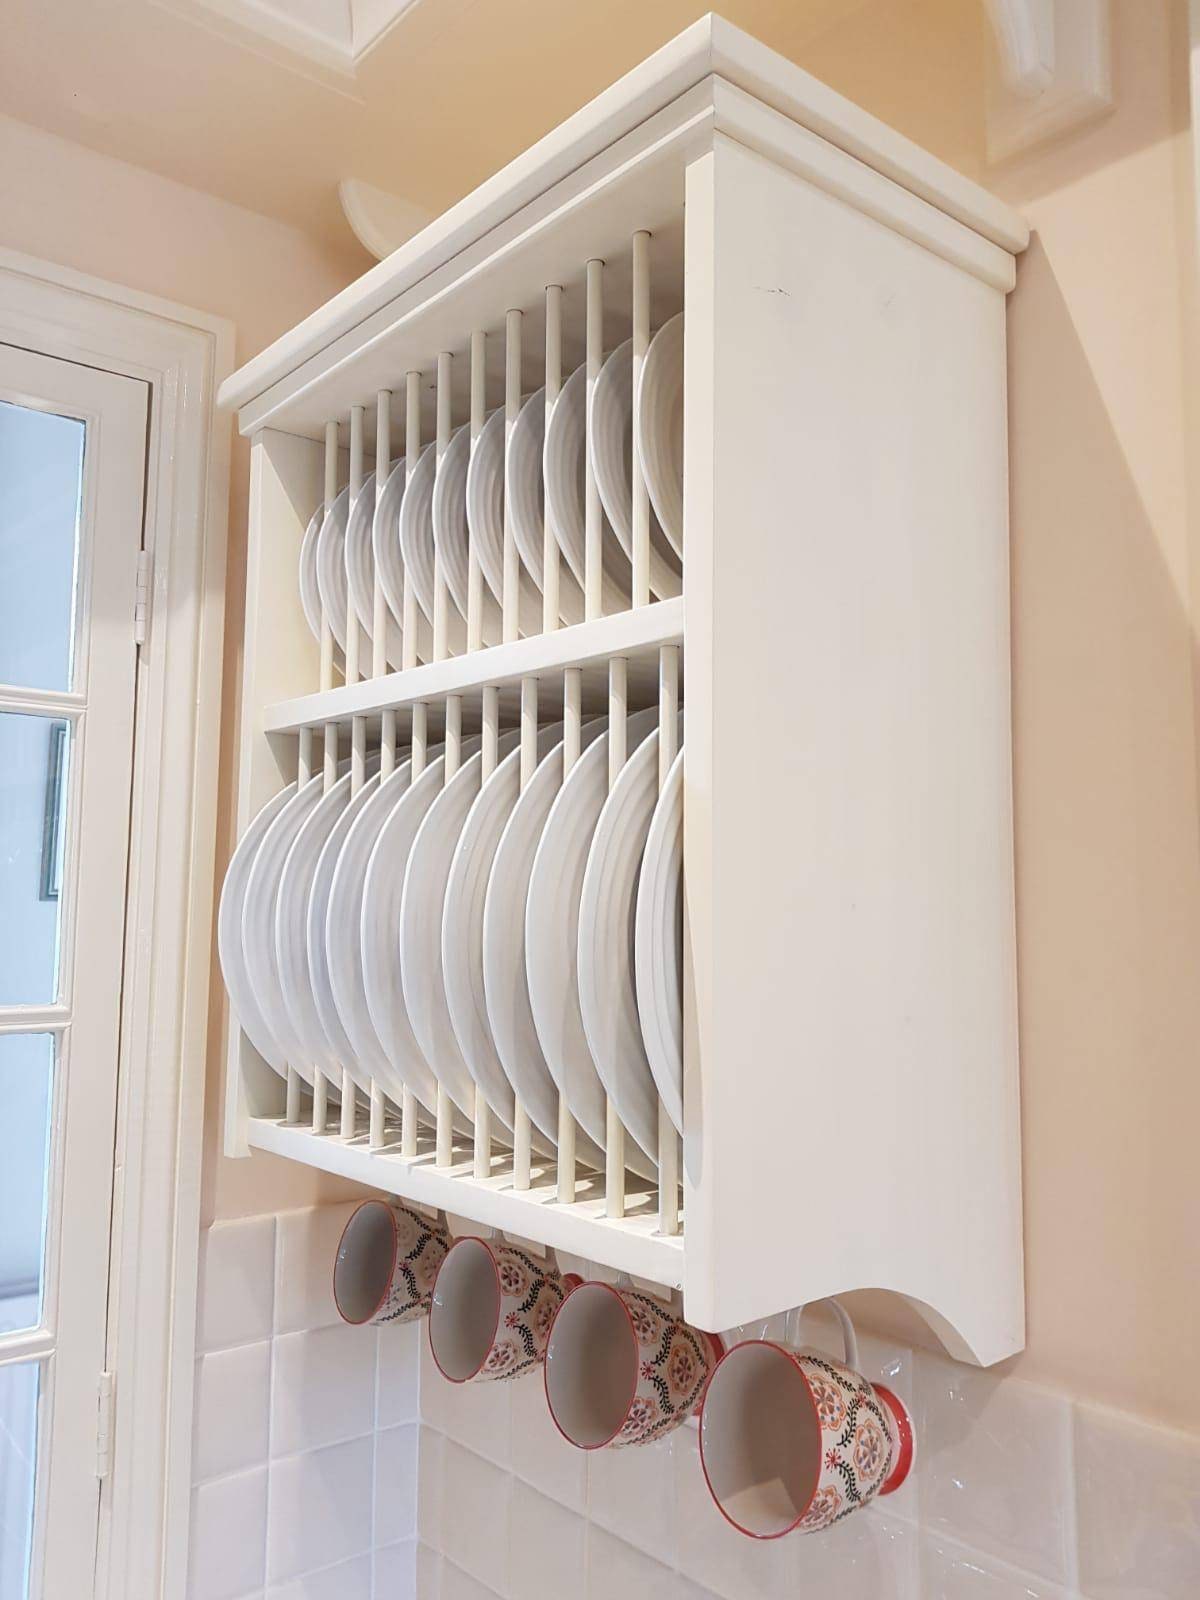 DIY - Inside Cabinet Plate Rack - Remodelando la Casa